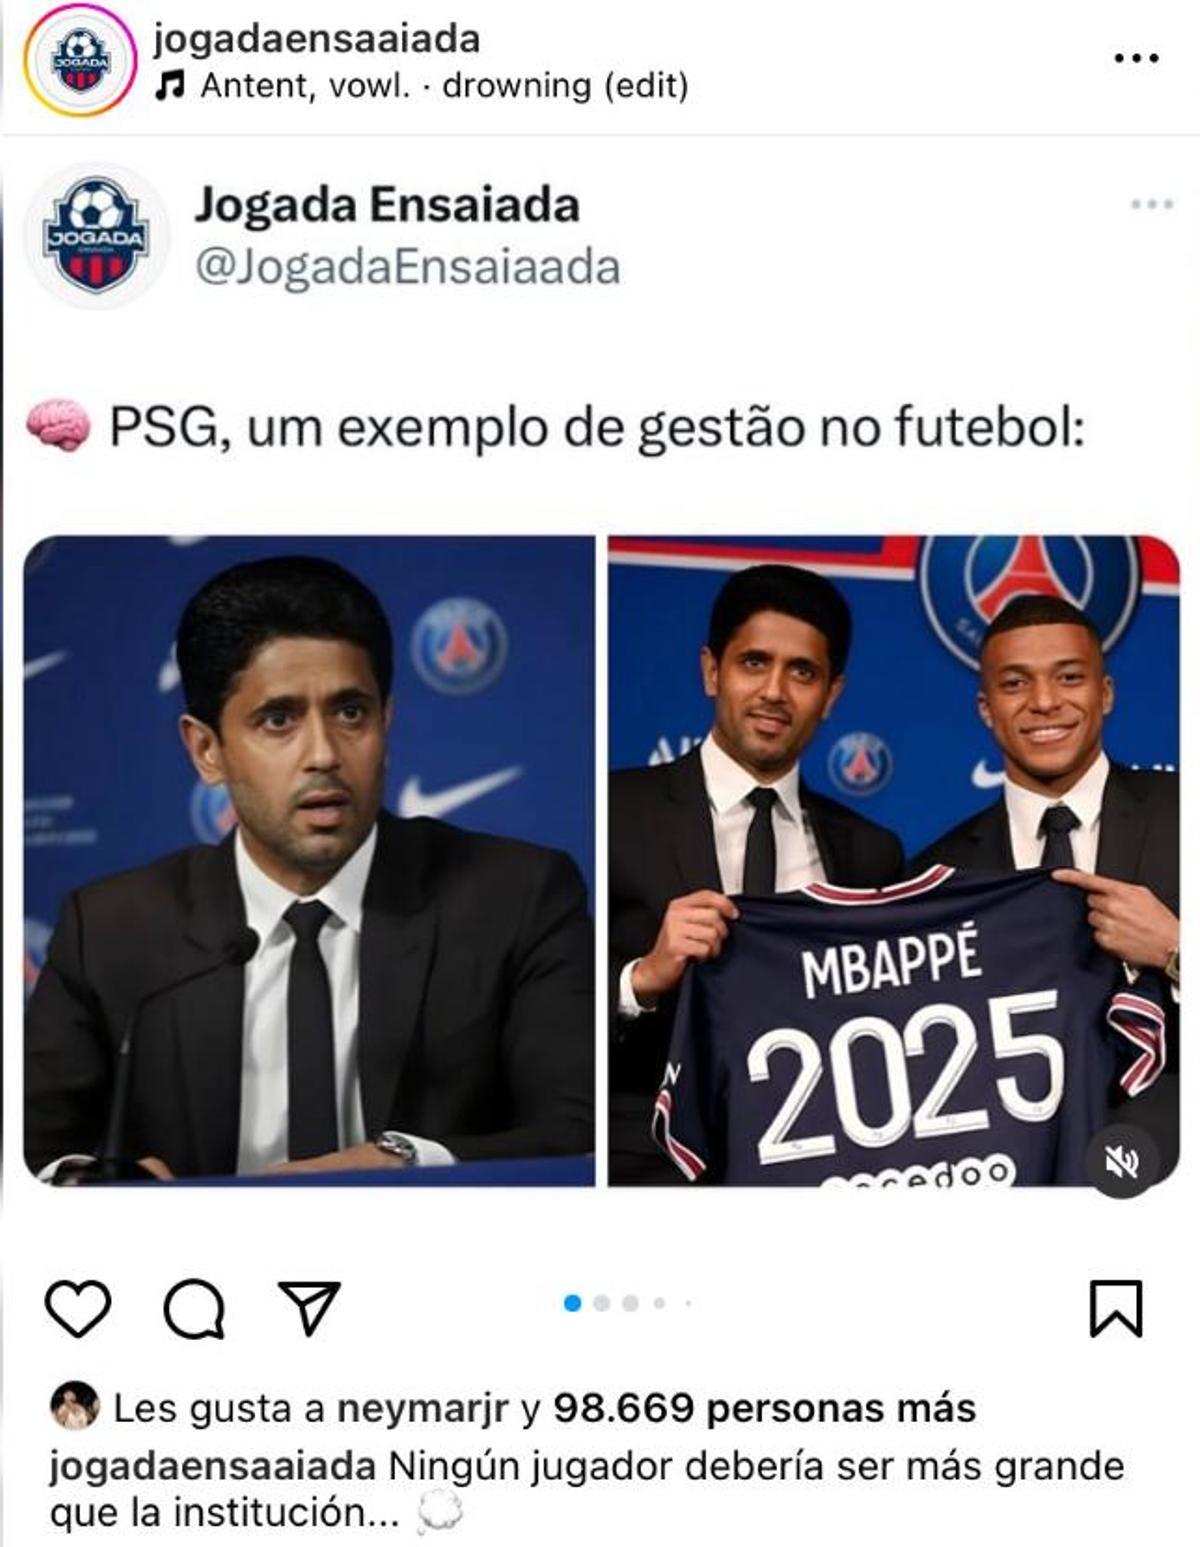 Publicación de Instagram con el MG de Neymar